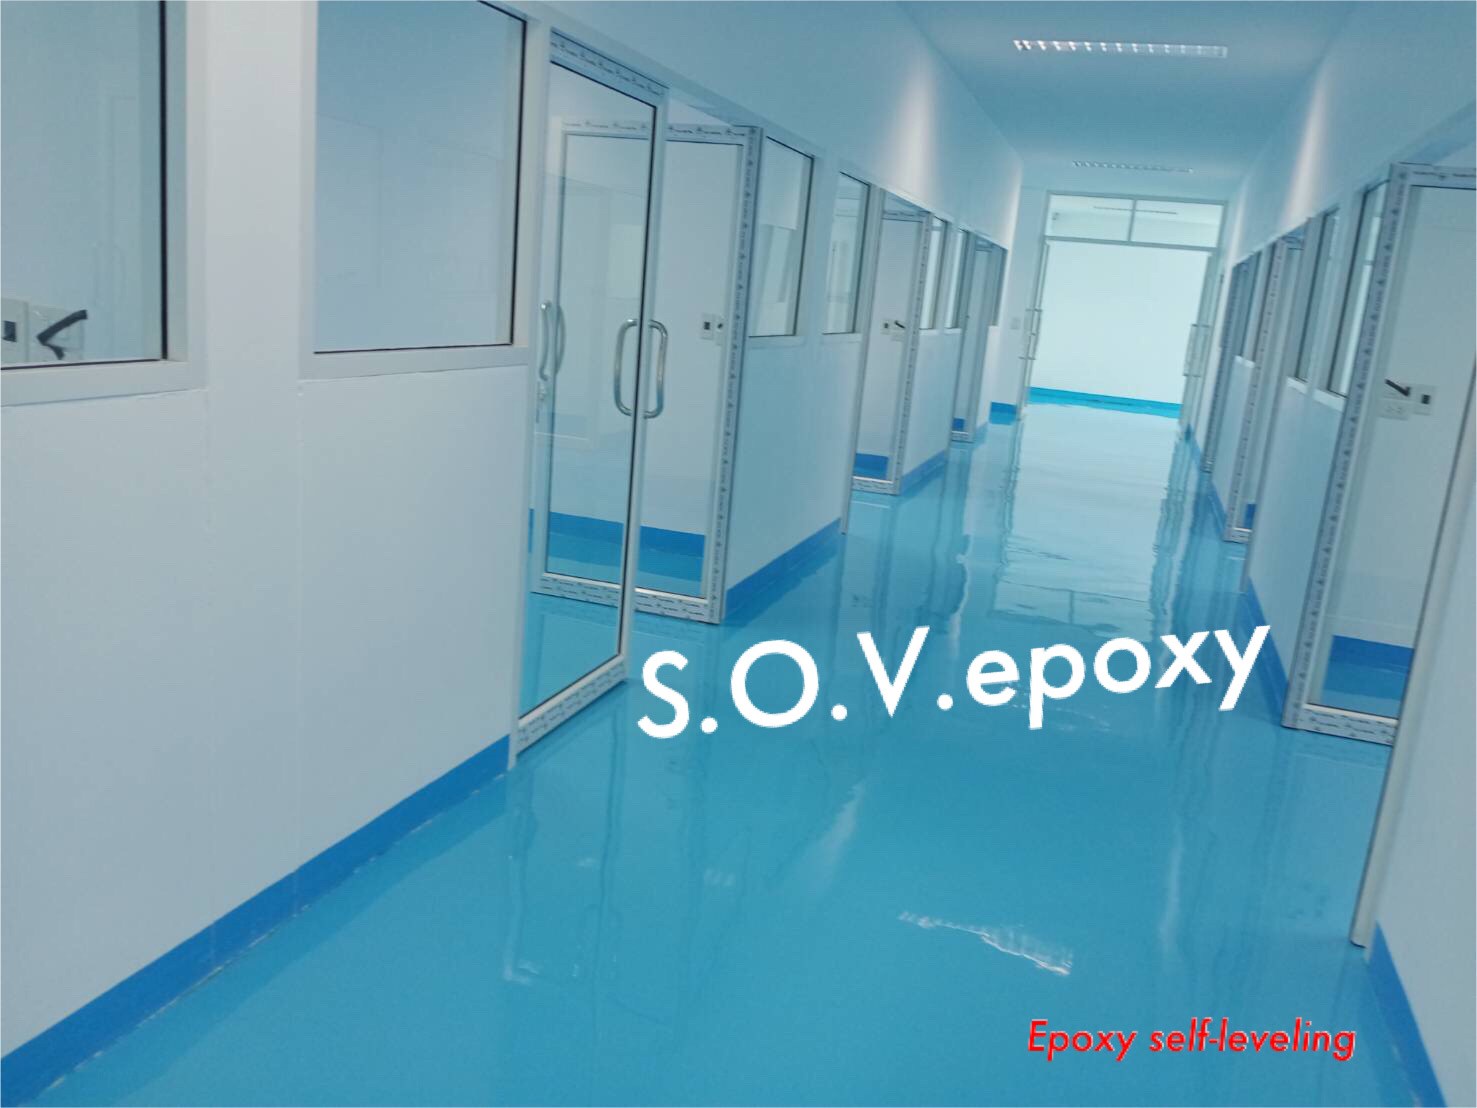 Sov Epoxy ทำพื้นอีพ็อกซี่ พื้นพียู พื้นโรงงาน พื้นสนามกีฬา CH 12